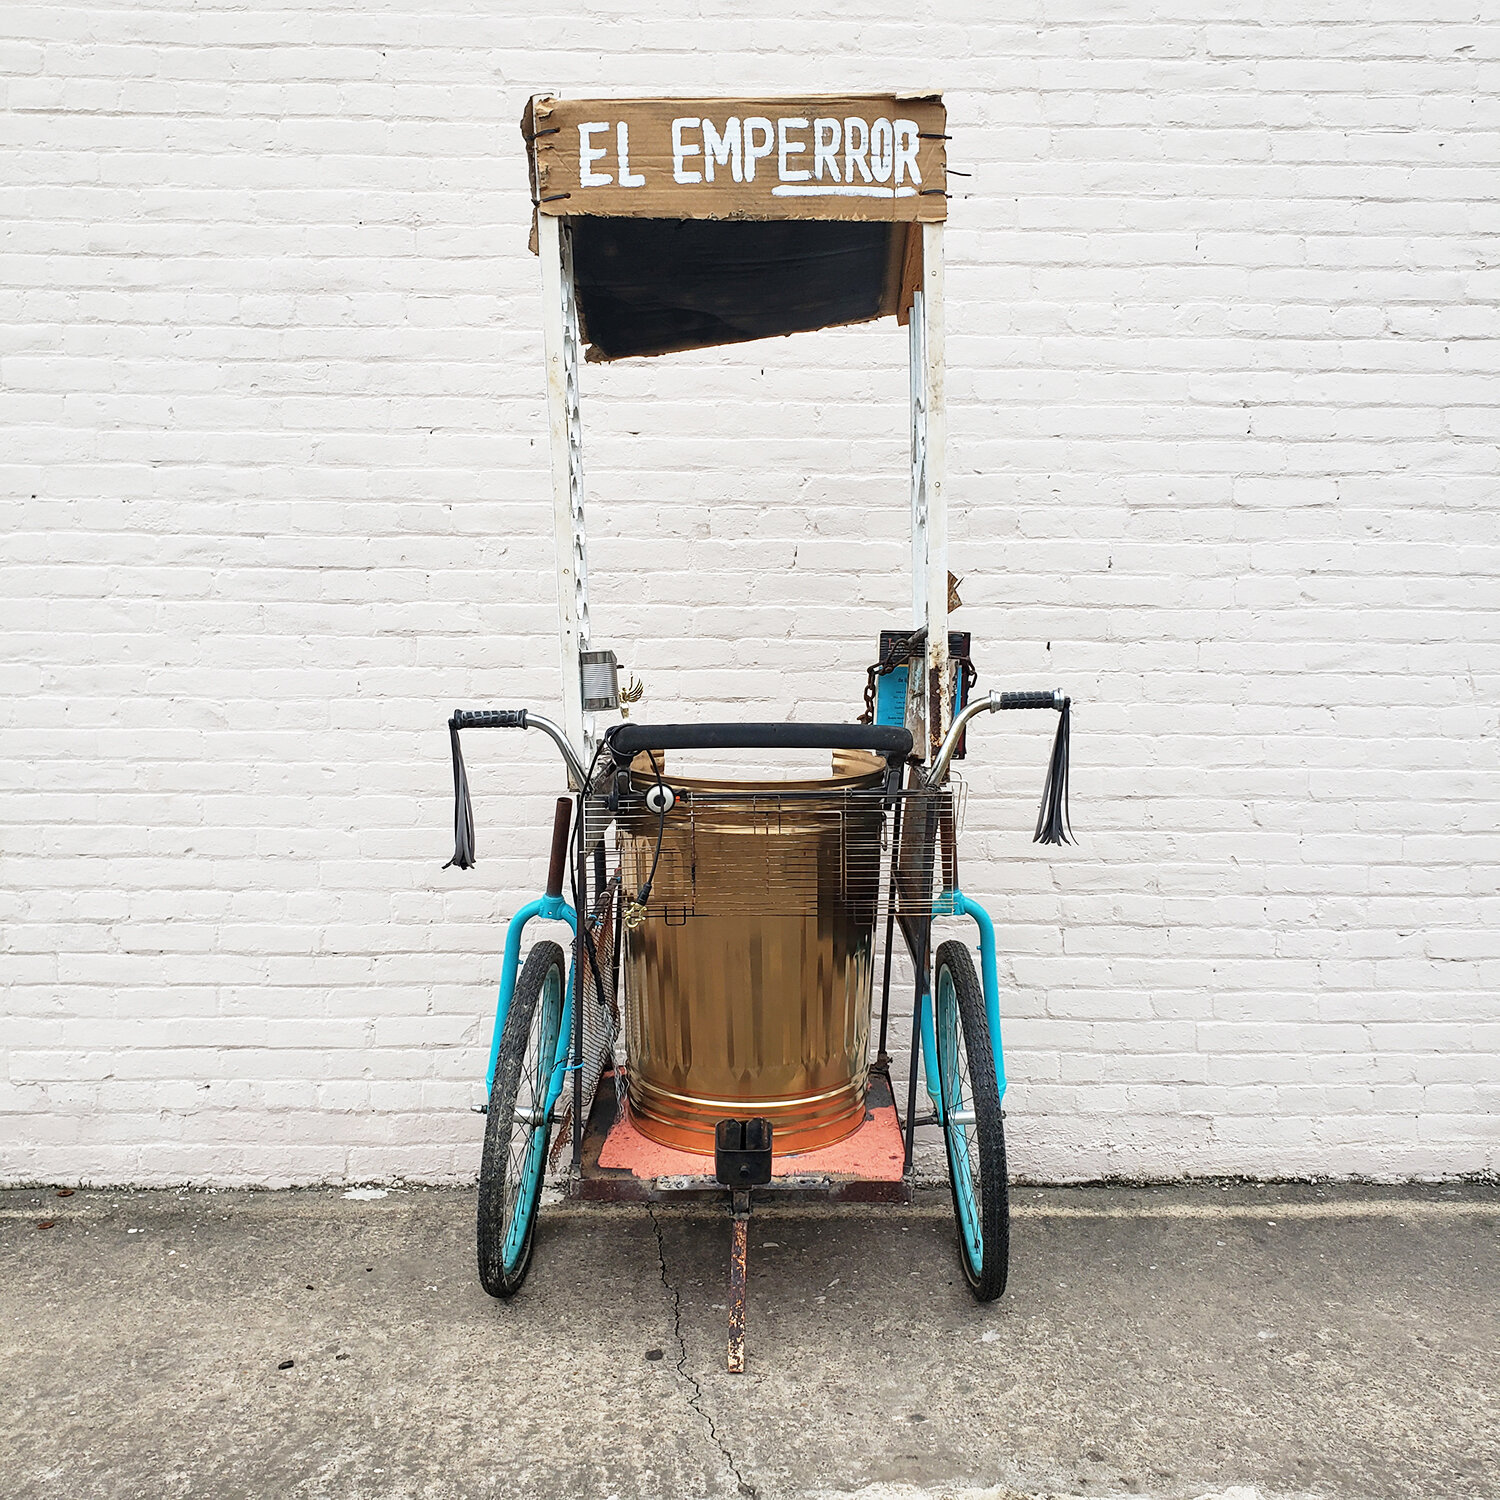  El Emperror, 2020. Mixed Media, 3 × 3 × 7 feet. 